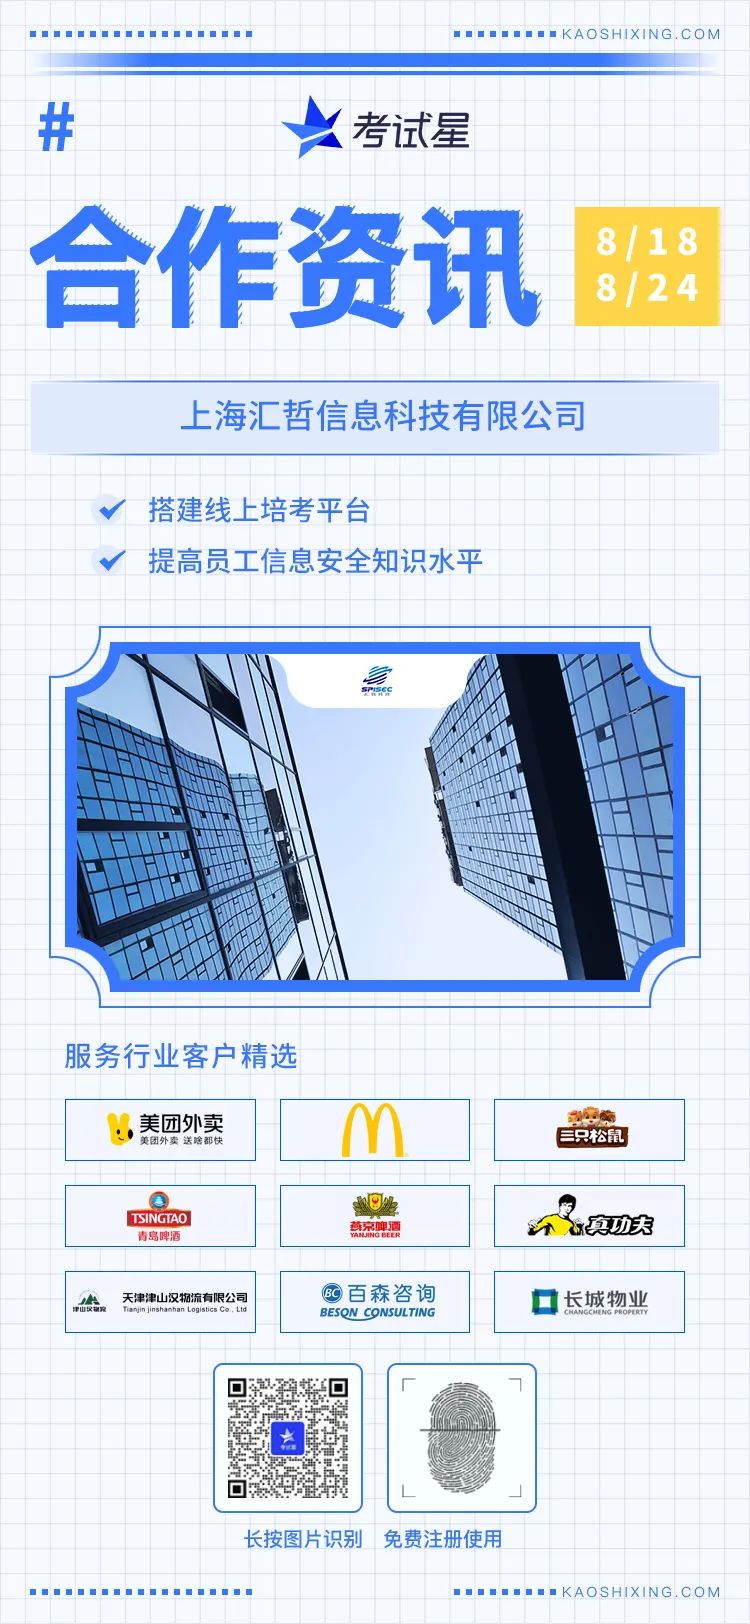 上海汇哲信息科技有限公司-线上培考平台